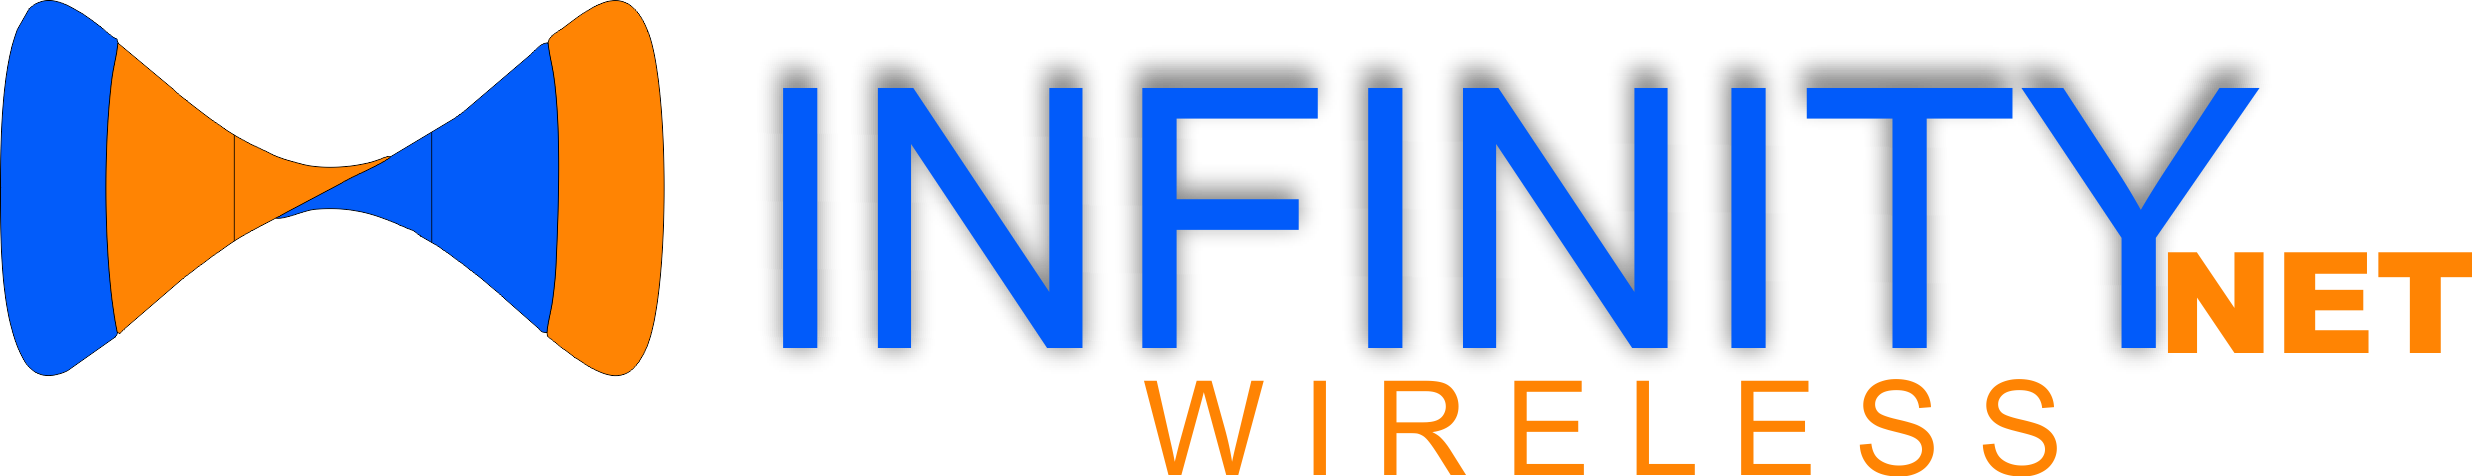 Logo InfinityNet